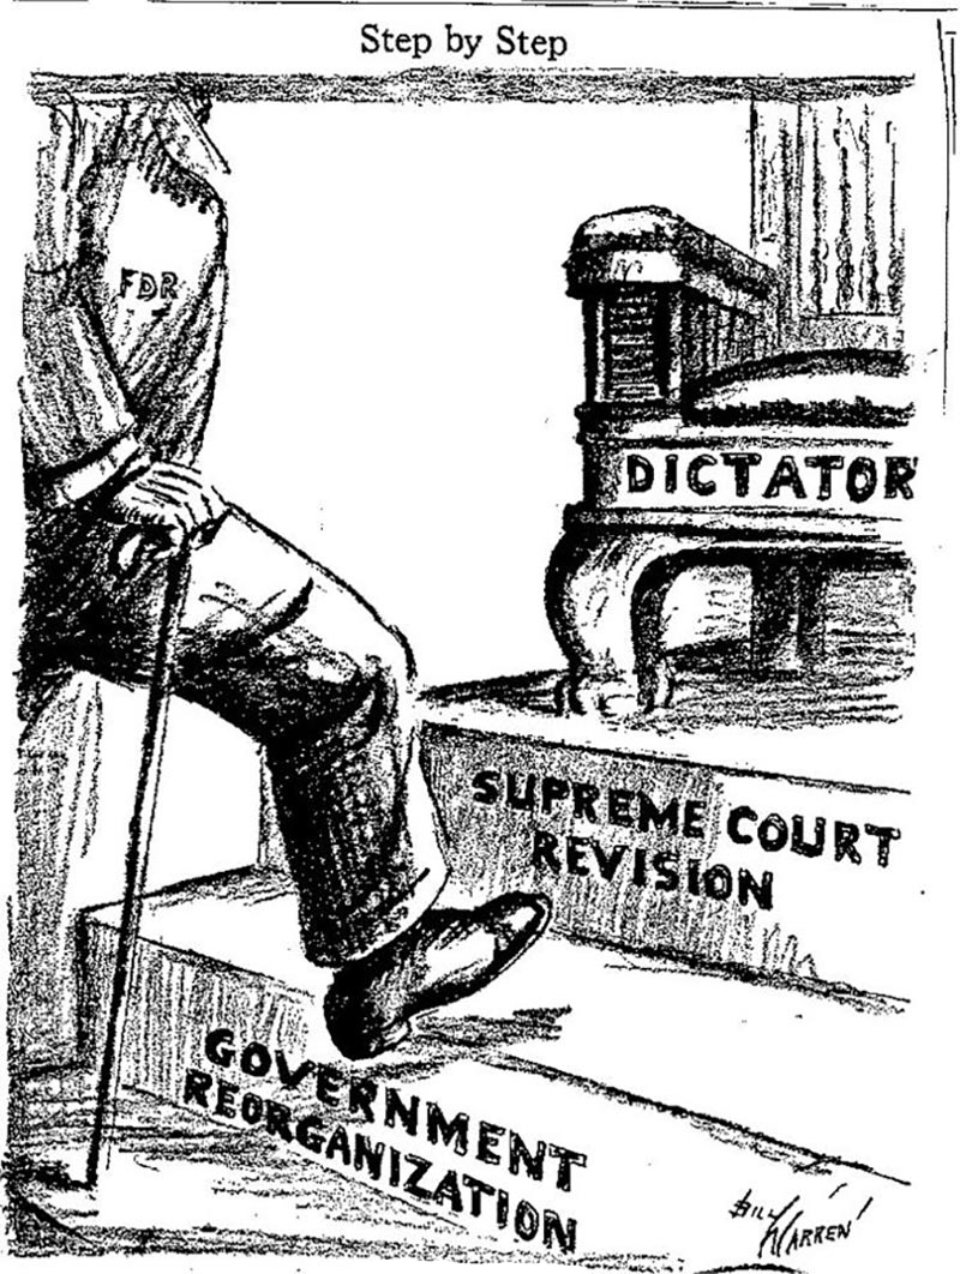 Карикатура 1937 року зображує шлях Рузвельта до диктатури. Друга сходинка — переформатування Верховного суду